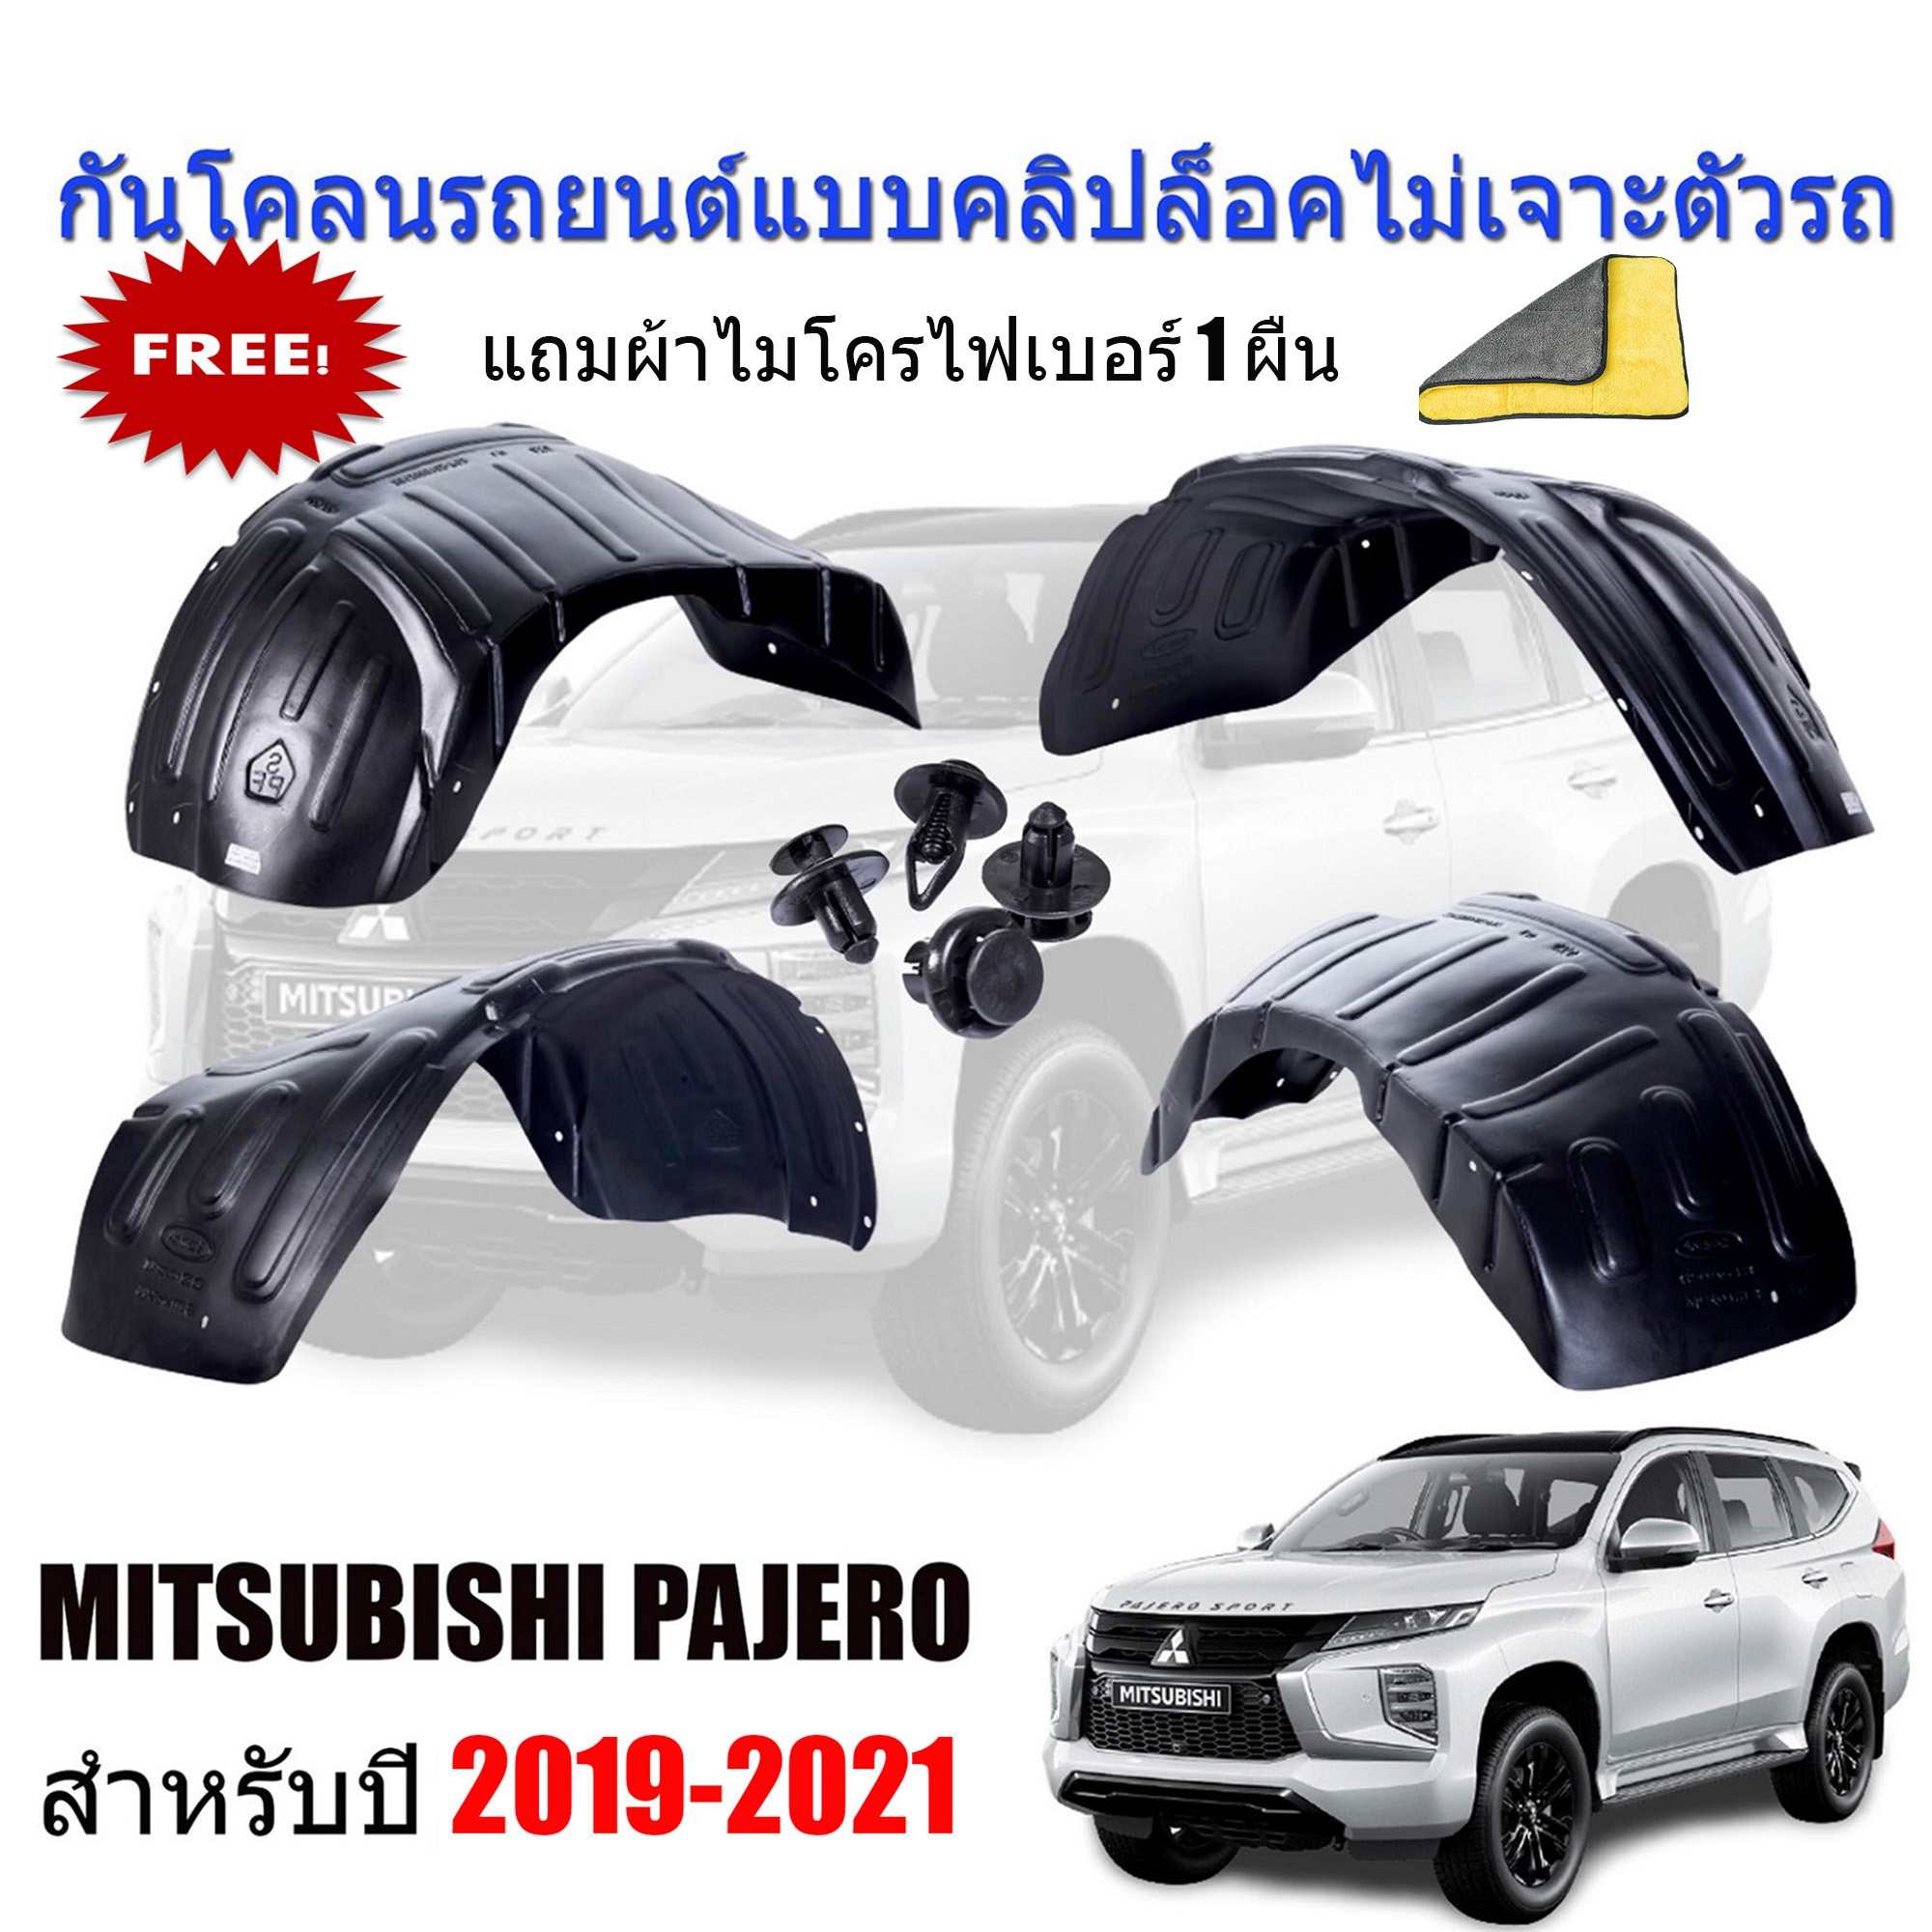 กันโคลนรถยนต์ MITSUBISHI PAJERO ปี 2019-2022 (แบบคลิ๊ปล็อคไม่เจาะตัวรถ) กรุล้อรถยนต์ กันโคลน กรุล้อ ซุ้มล้อ ซุ้มล้อรถยนต์ บังโคลนรถยนต์ บังโคลน